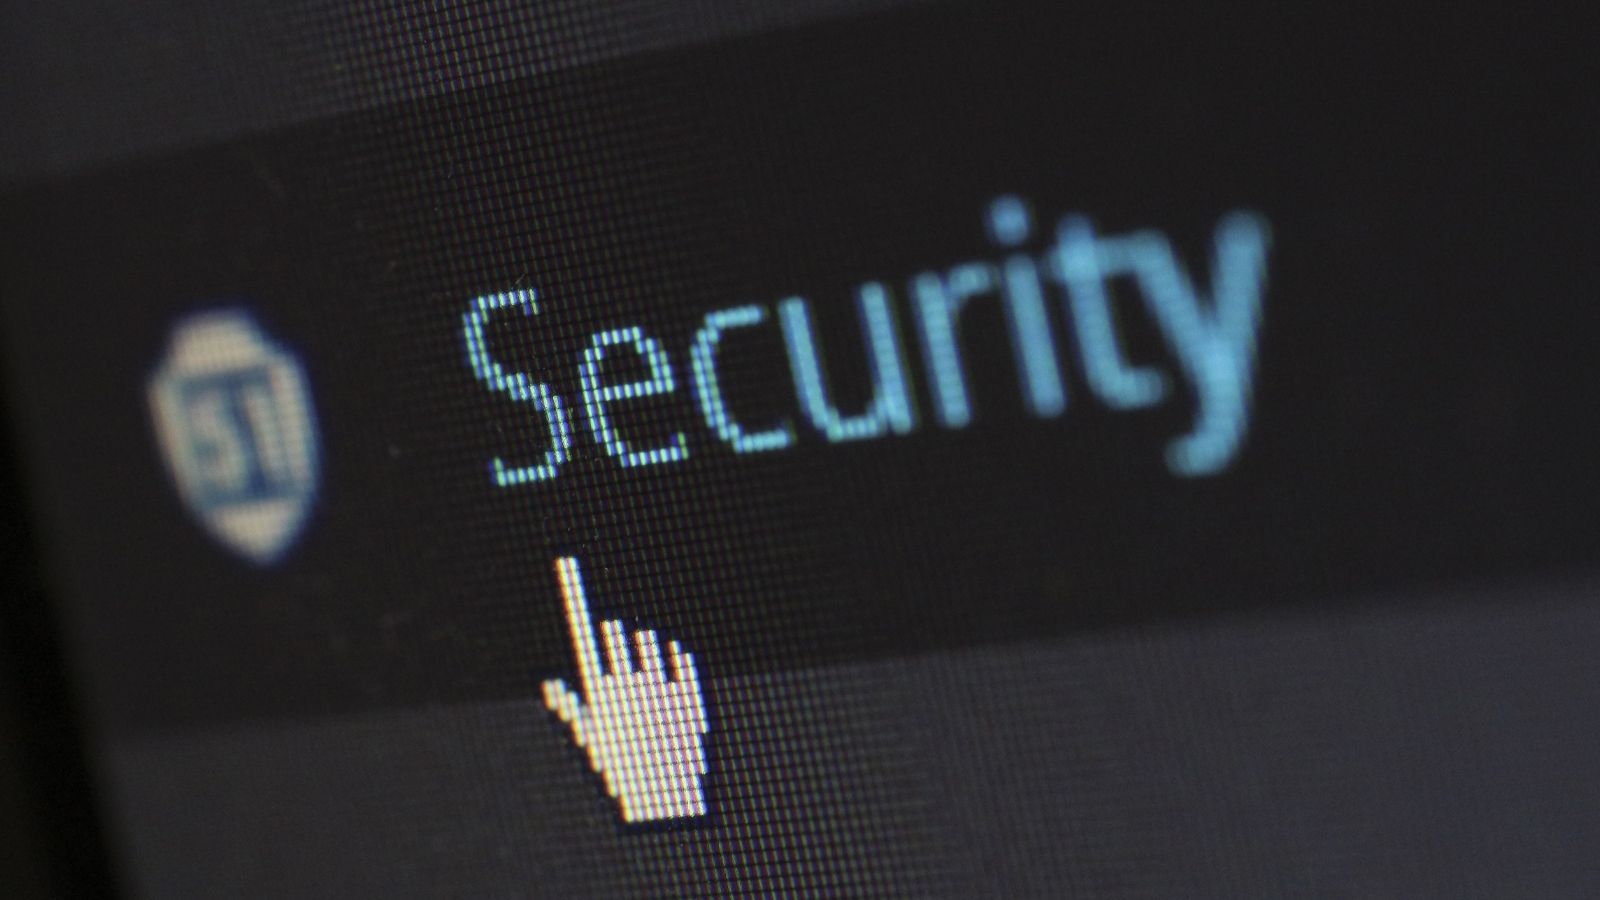 Od botnetów do phishingu – przegląd zagrożeń w 2020 roku phising mediarfun cybersecurity